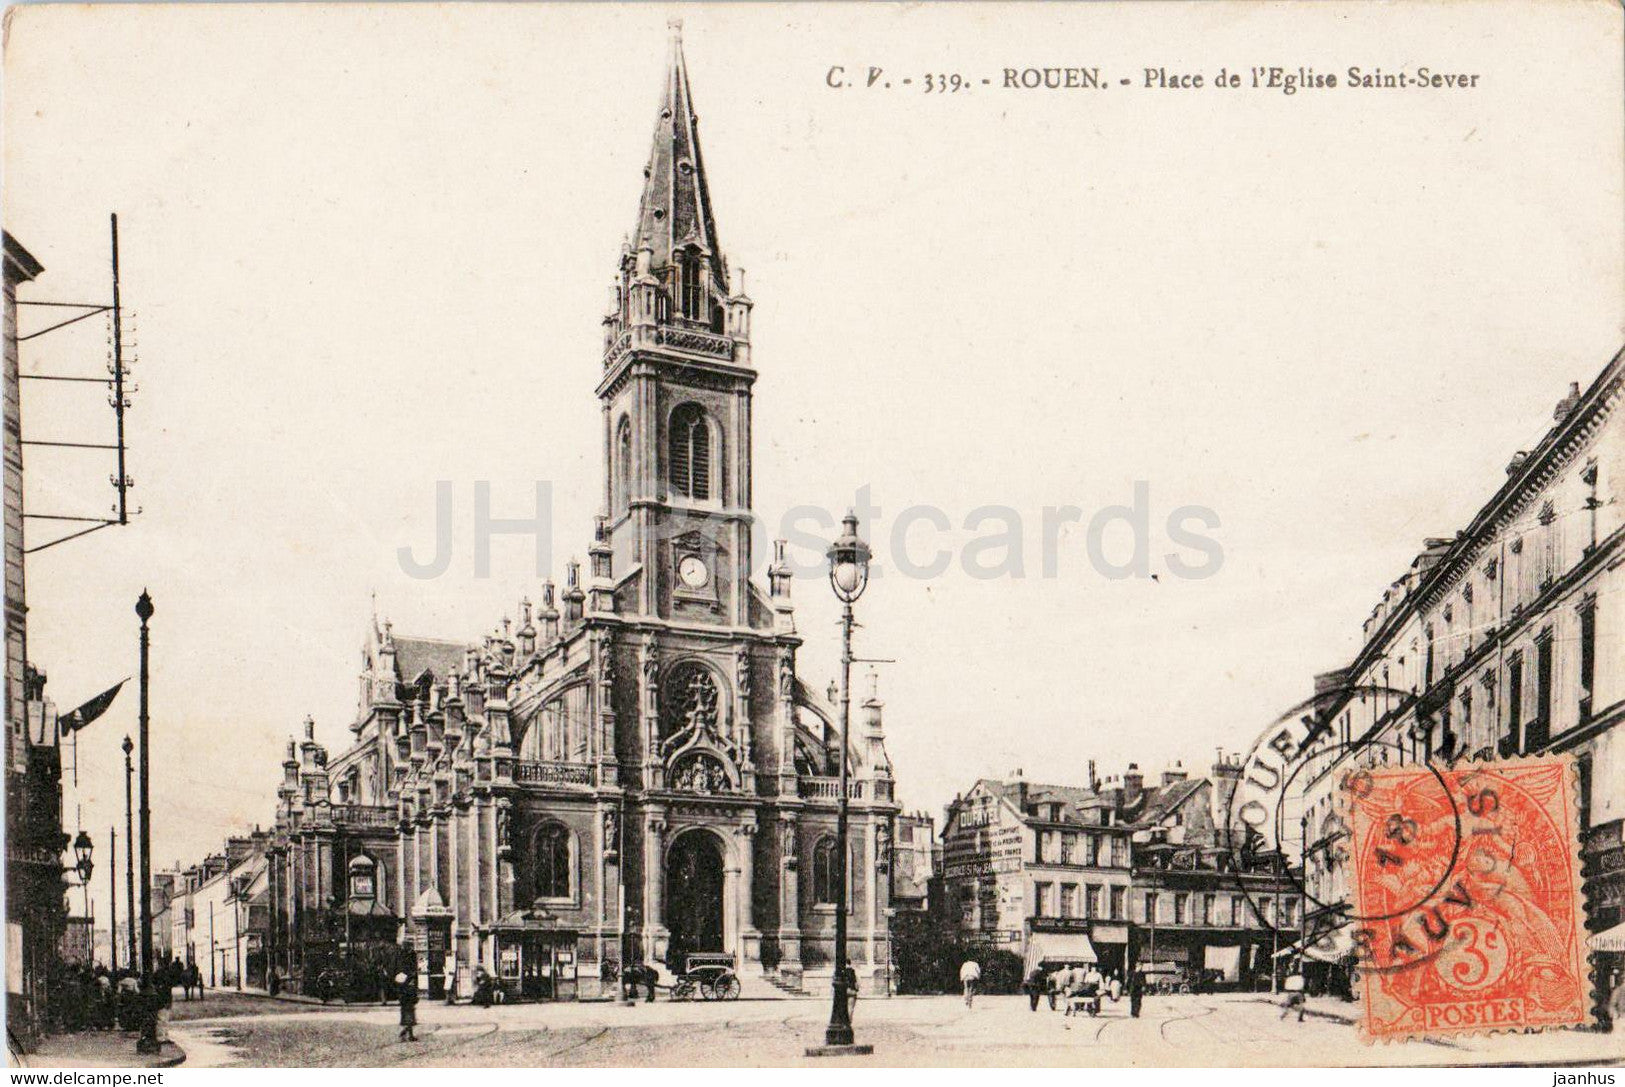 Rouen - Place de l'Eglise Saint Sever - church - 339 - old postcard - 1918 - France - used - JH Postcards